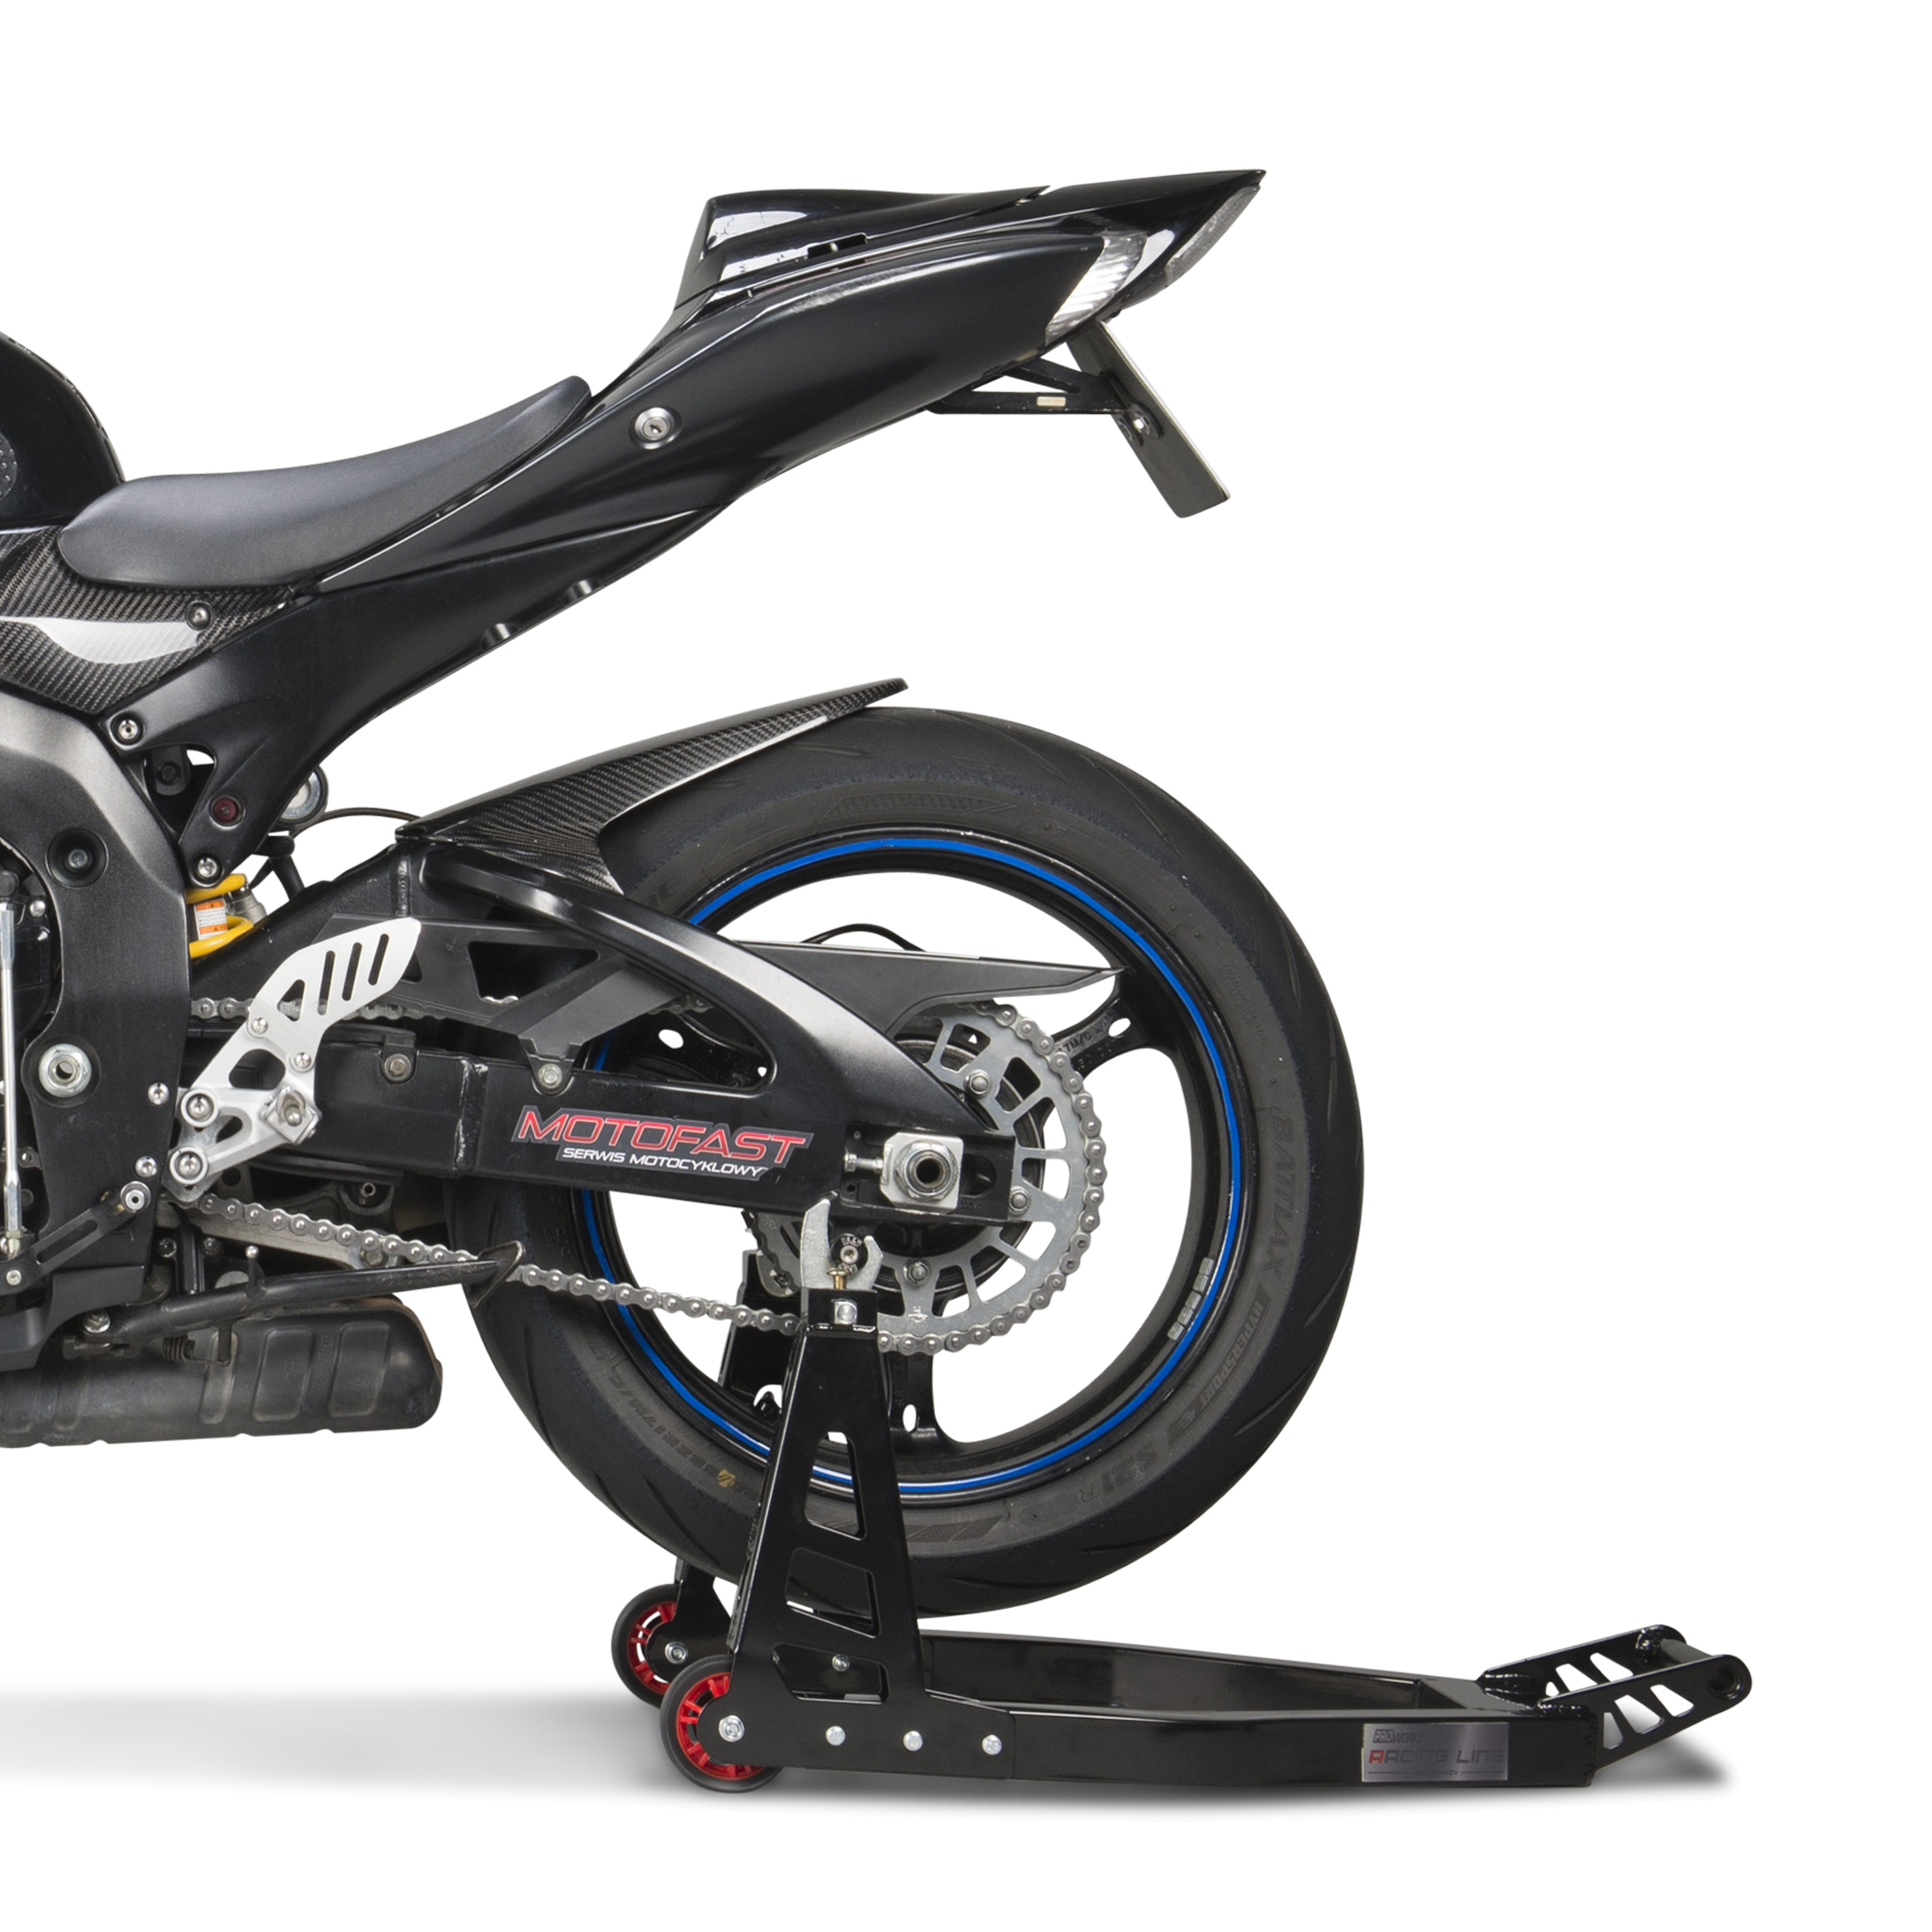 Béquille Moto Atelier et Transport Universelle leve-moto